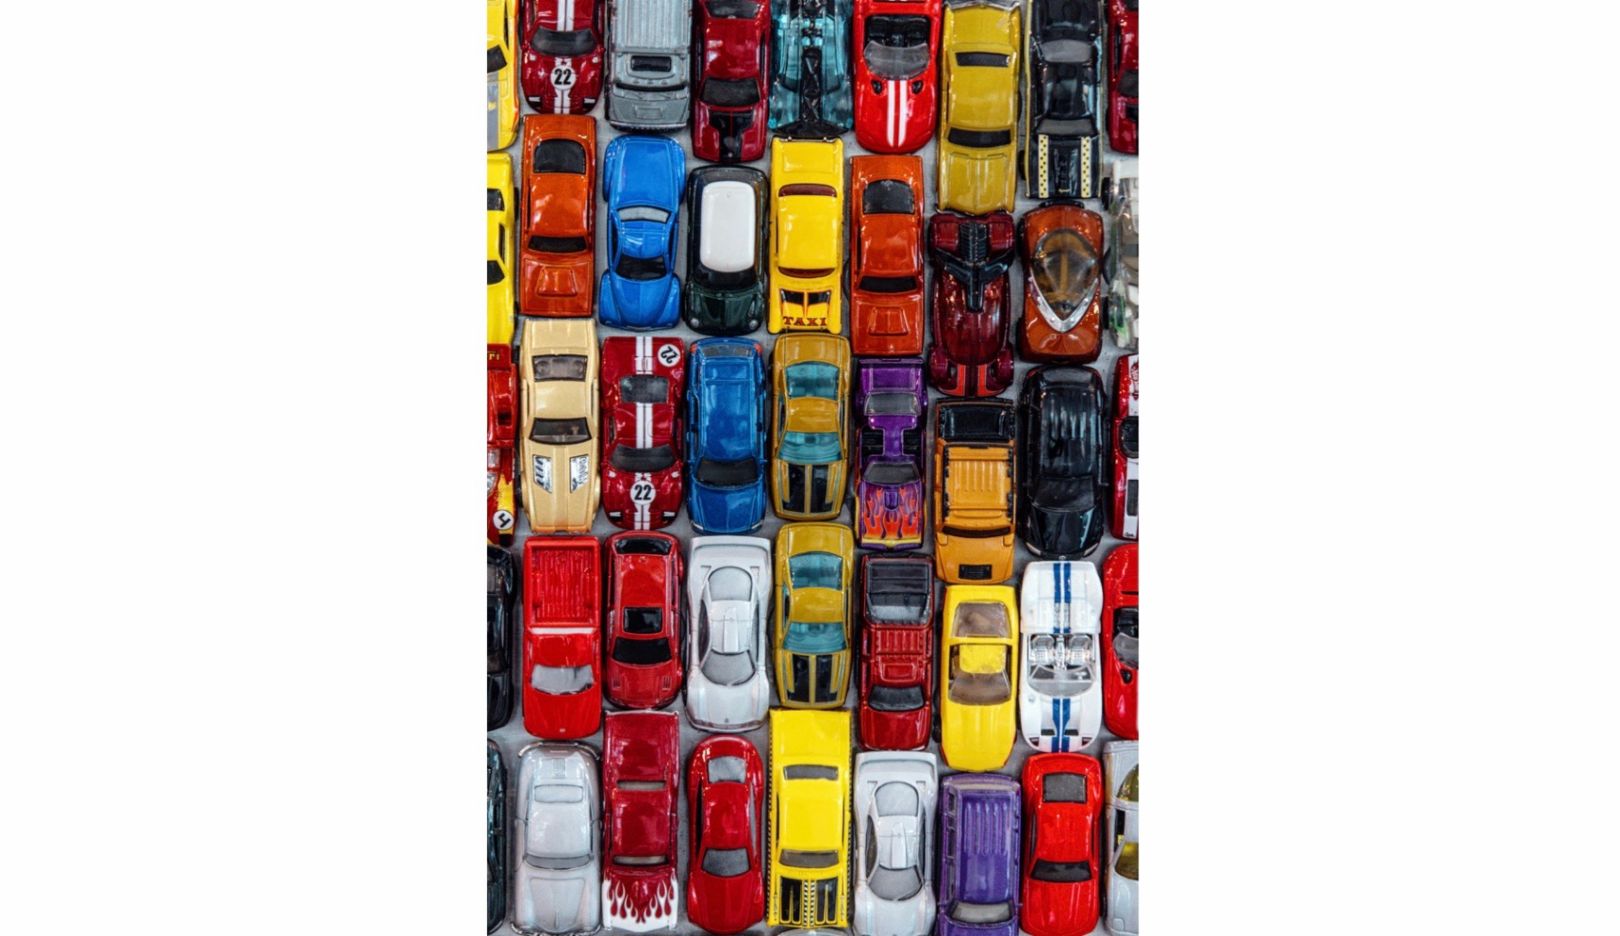 Arte en espacios públicos: para adornar un parking en la localidad californiana de Stockton, Huether creó un collage con 30 000 coches de juguete.